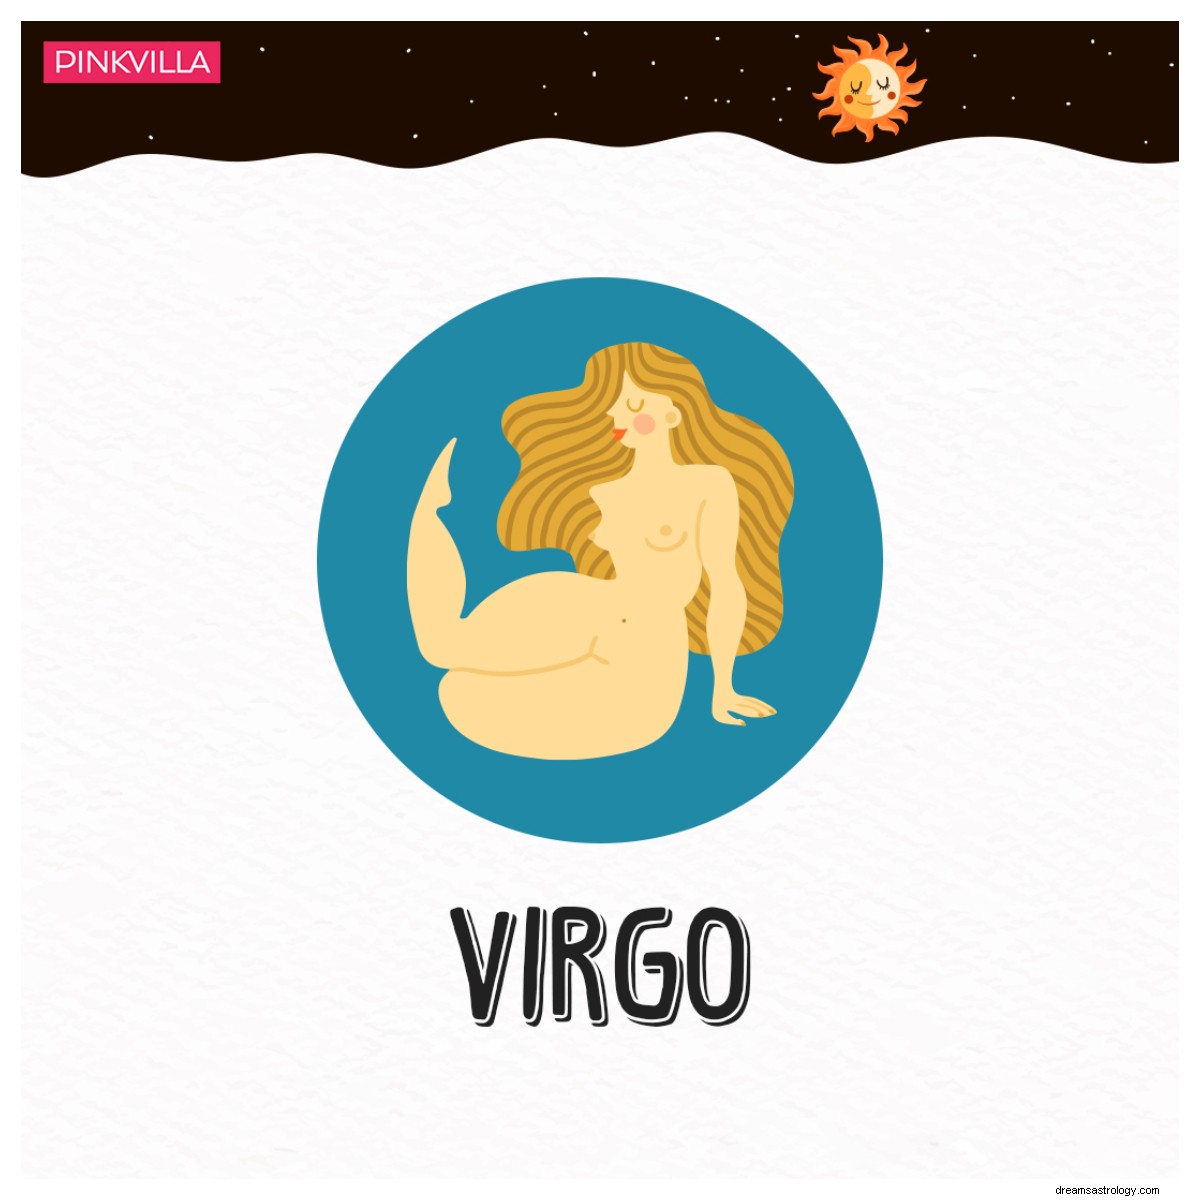 Leo a Libra:5 signos del zodiaco que se divirtieron mucho en 2021 